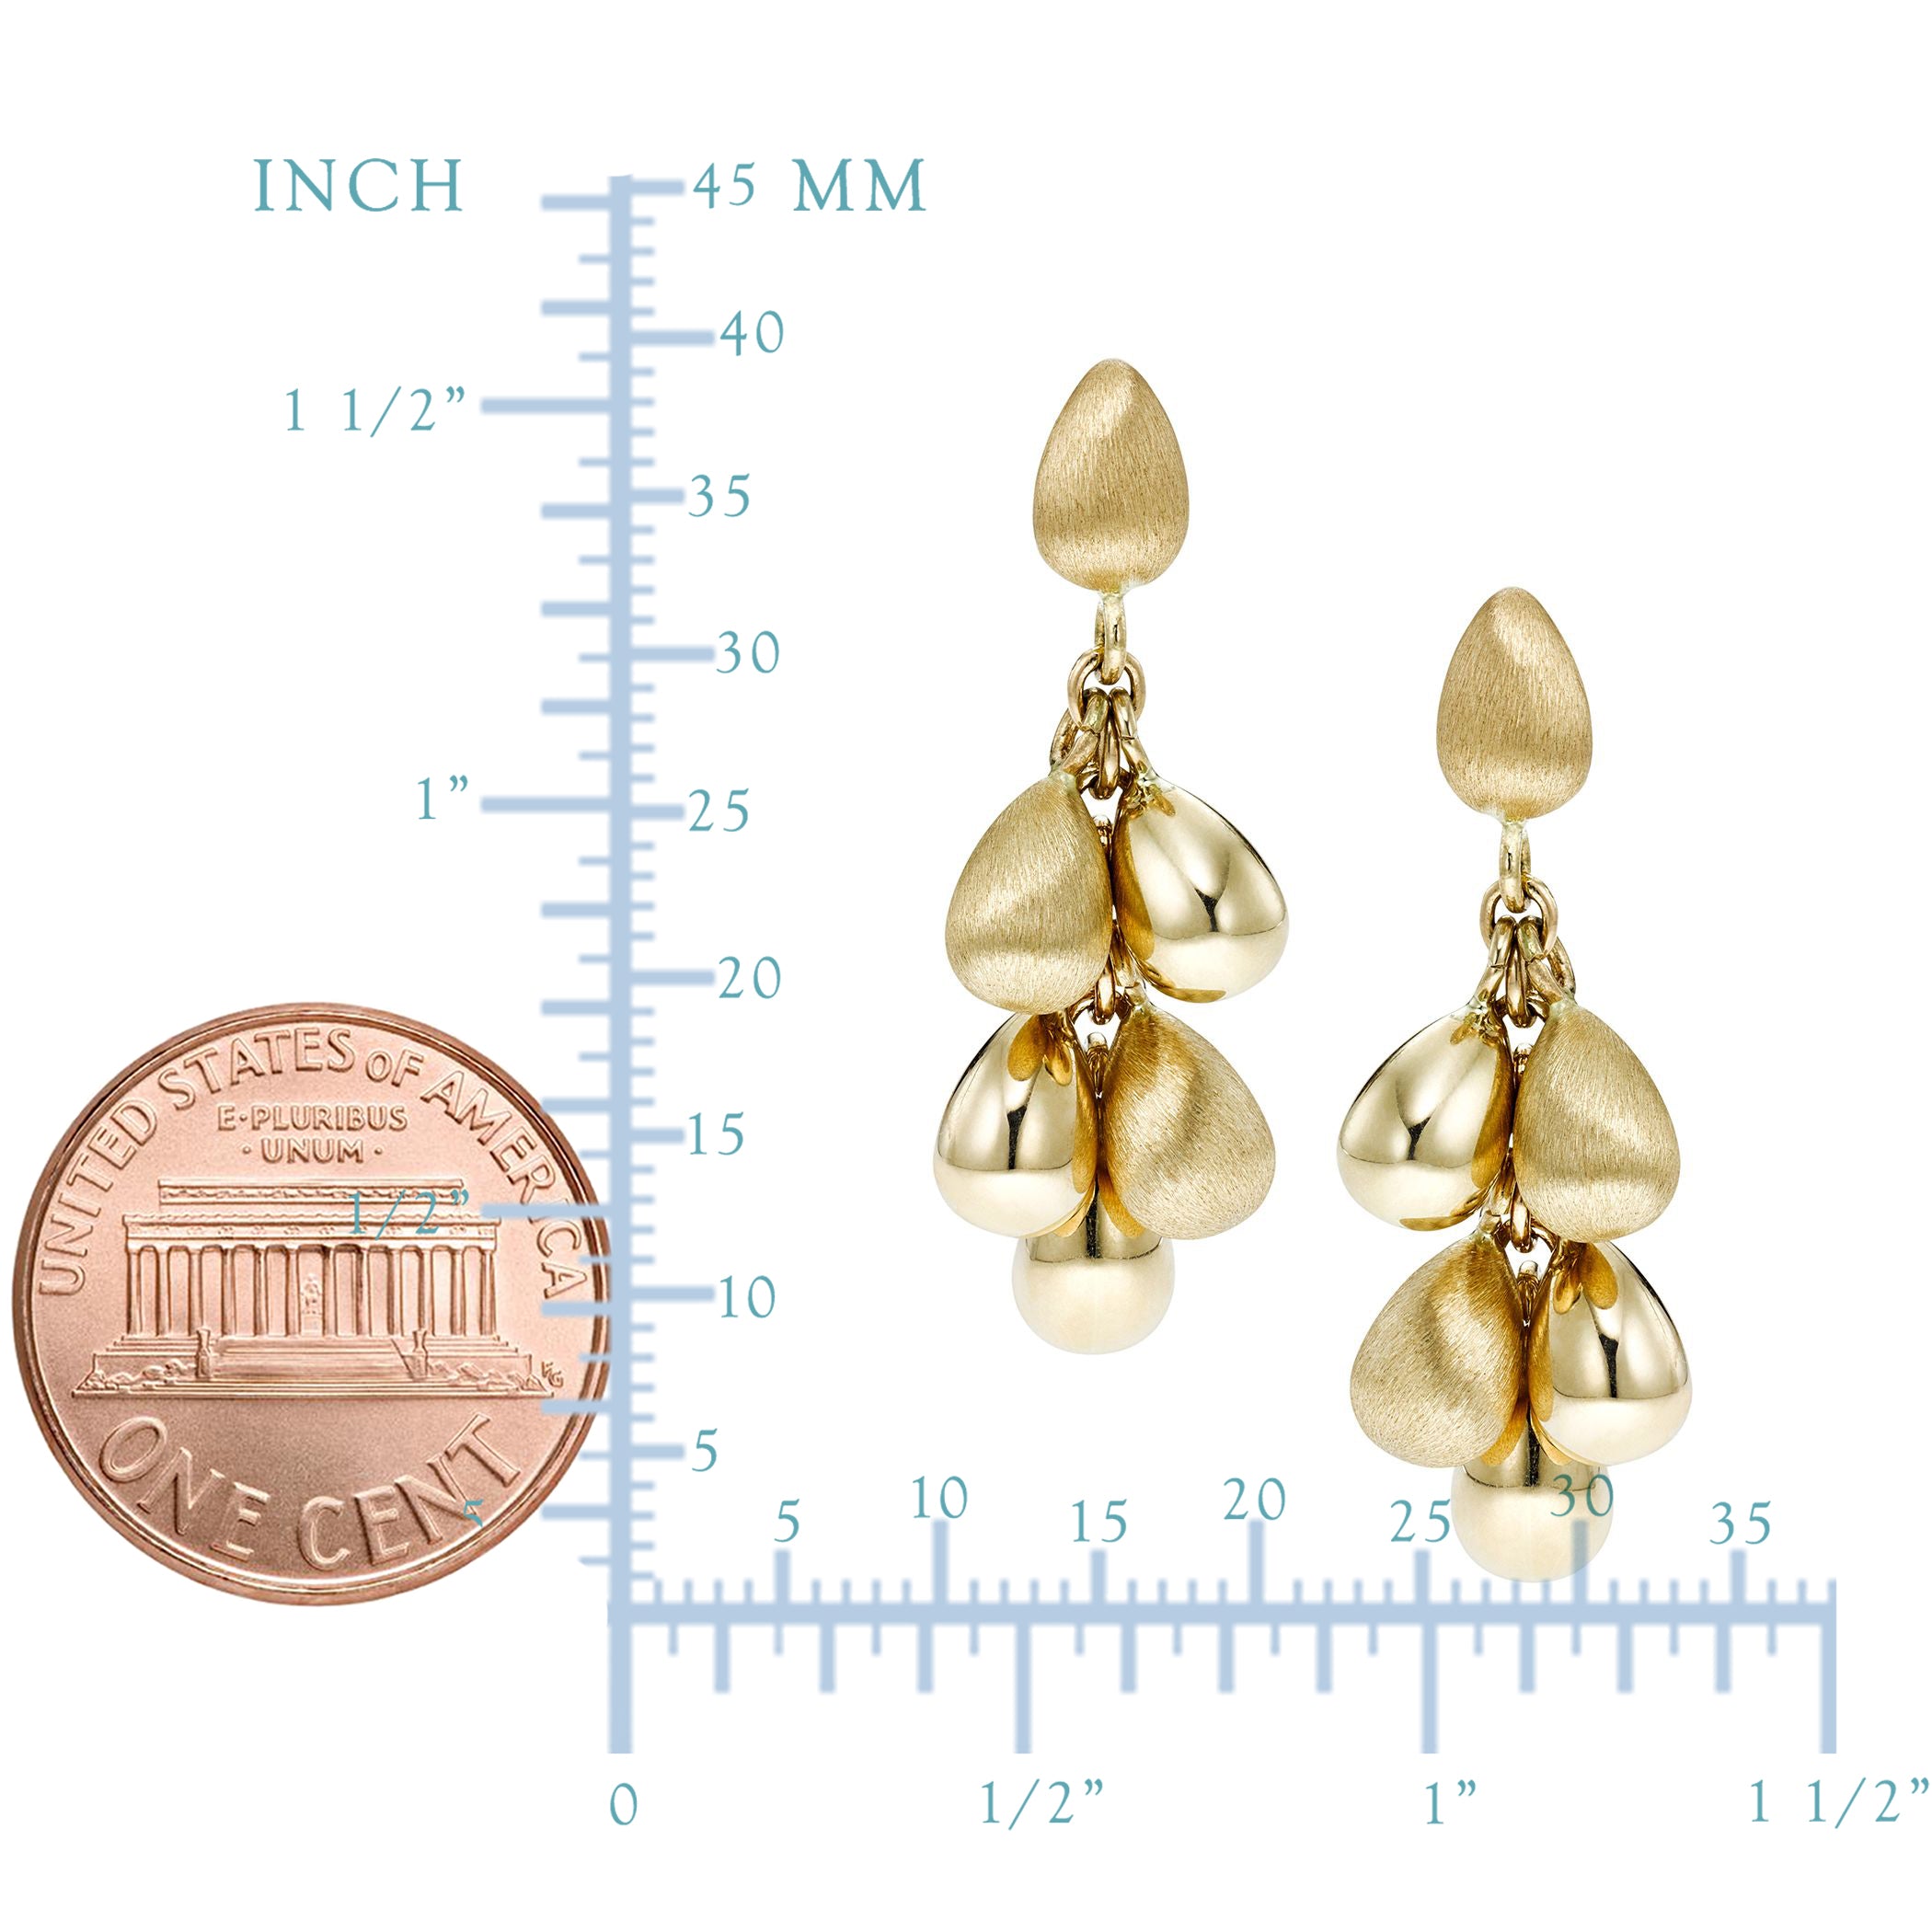 14K Yellow Gold Tear Drop Earrings fine designer jewelry for men and women